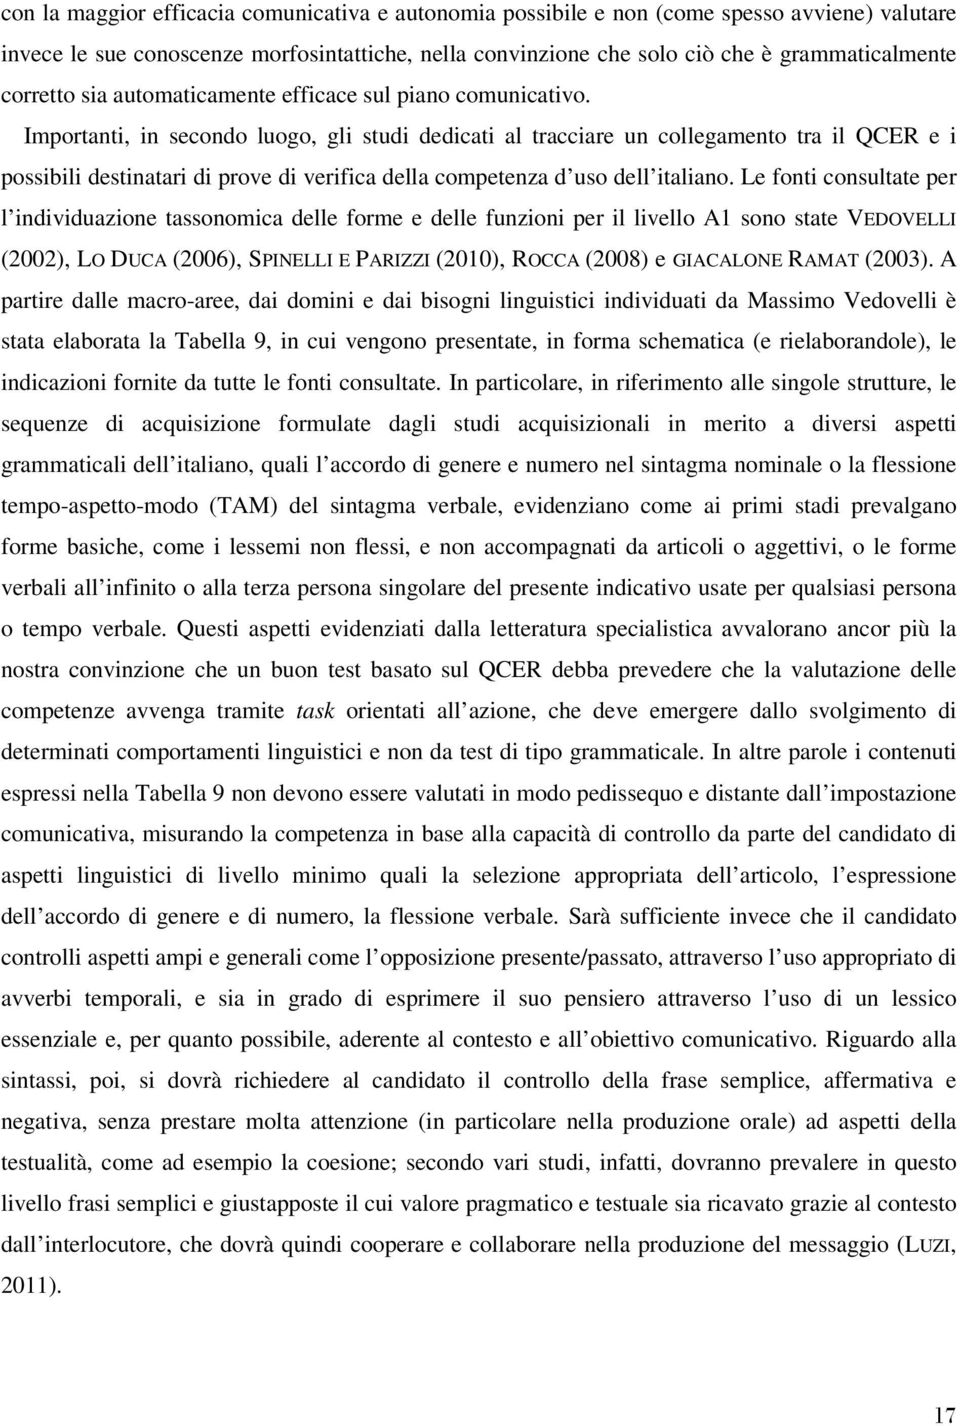 Importanti, in secondo luogo, gli studi dedicati al tracciare un collegamento tra il QCER e i possibili destinatari di prove di verifica della competenza d uso dell italiano.